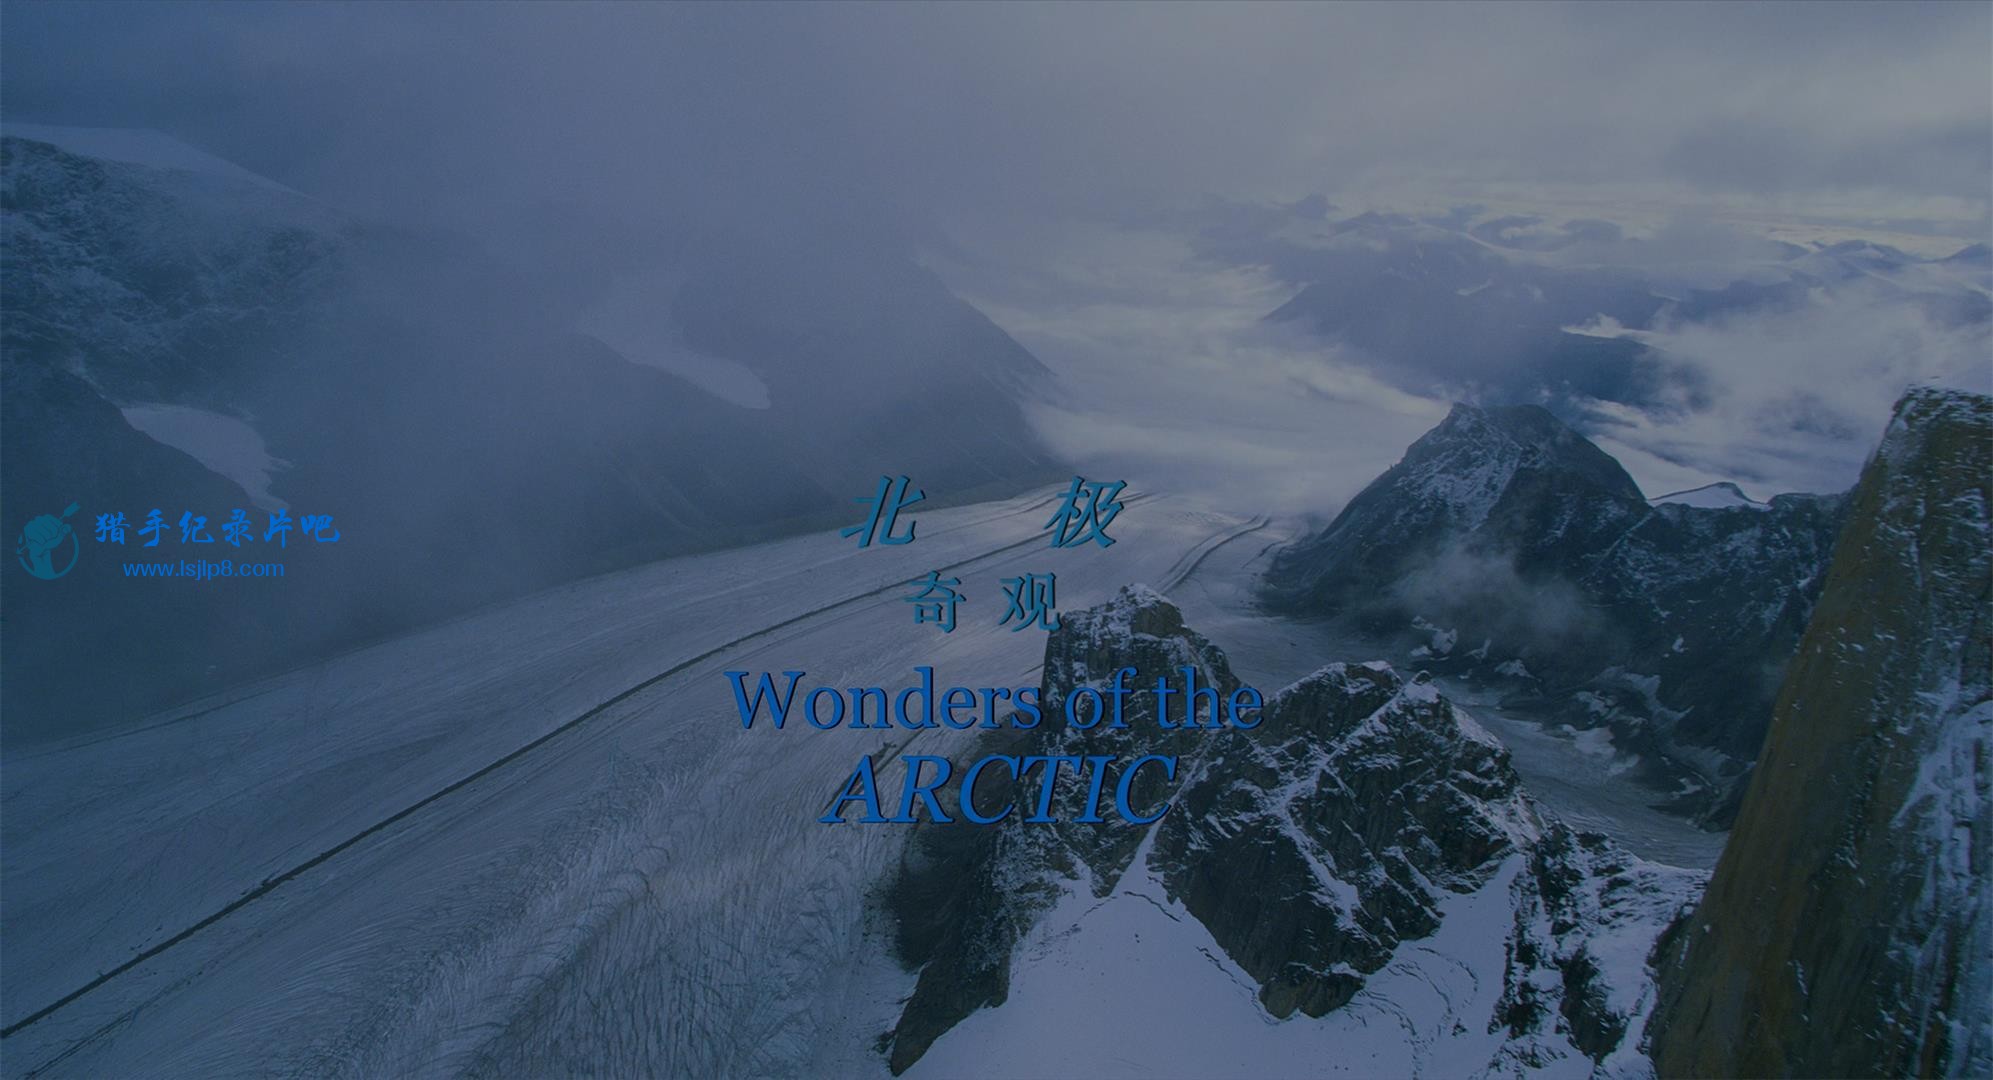 Wonders.of.the.Arctic.2014.2160p.UHD.BluRay.x265-WhiteRhino.mkv_20200704_100837.868(1).jpg